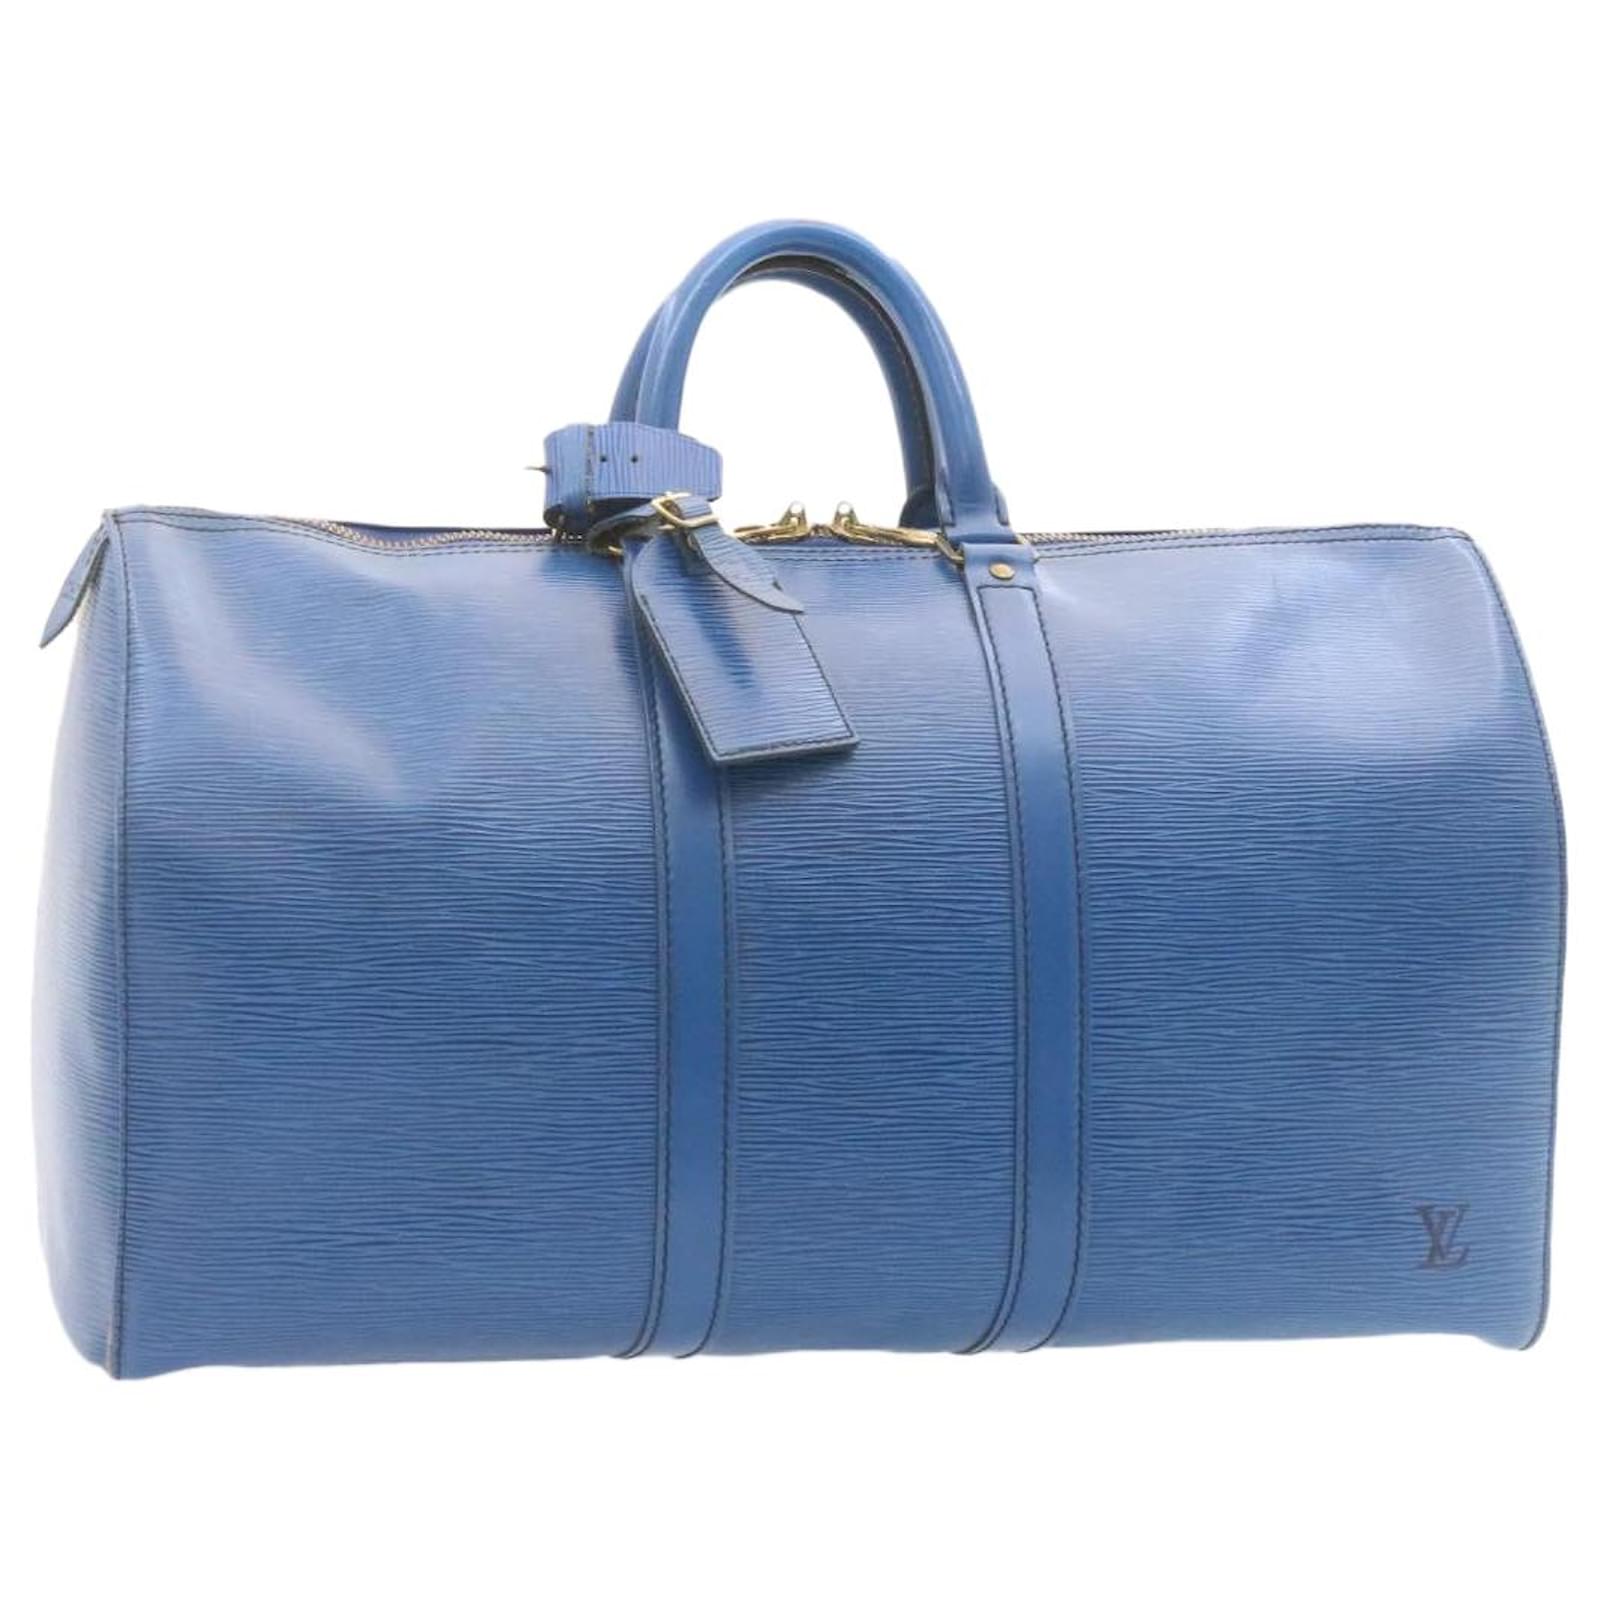 LOUIS VUITTON Epi Leather Blue Keepall 45 Boston Bag